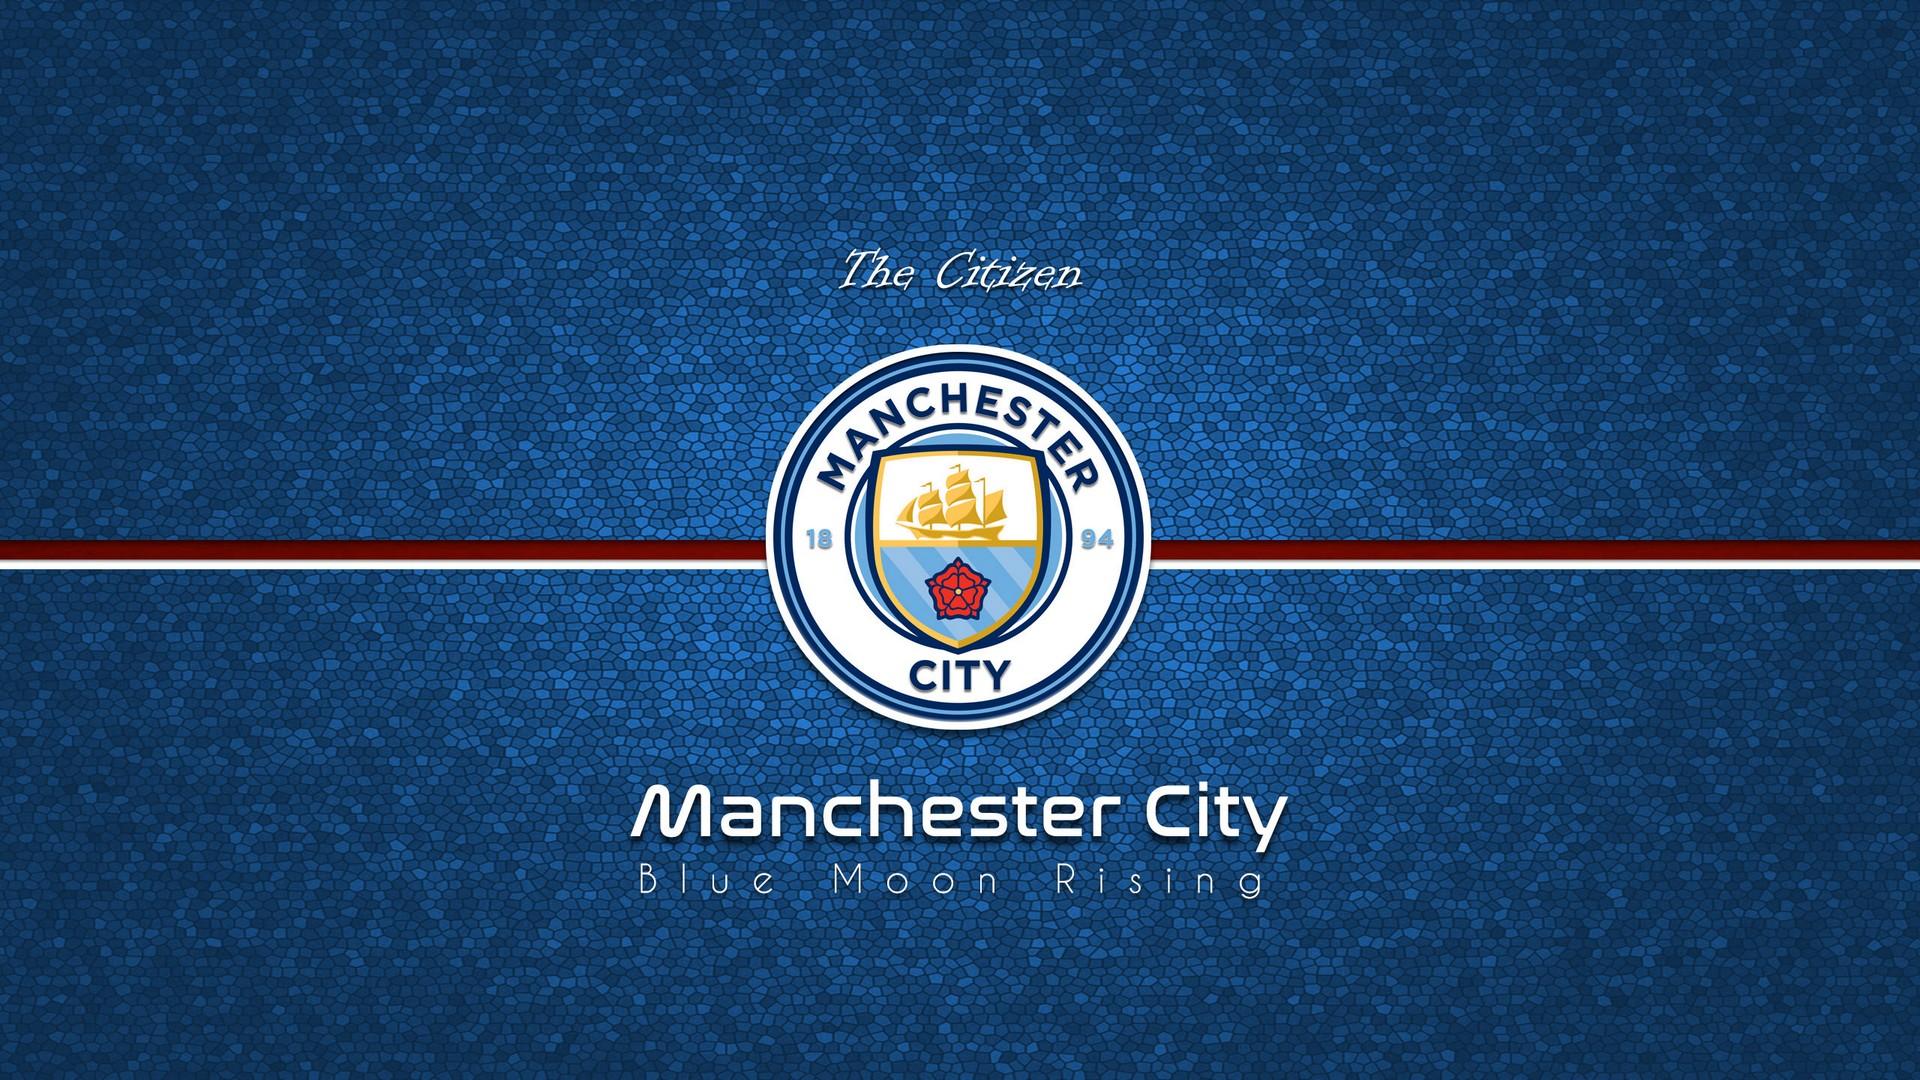 Manchester City 2019 Wallpaper